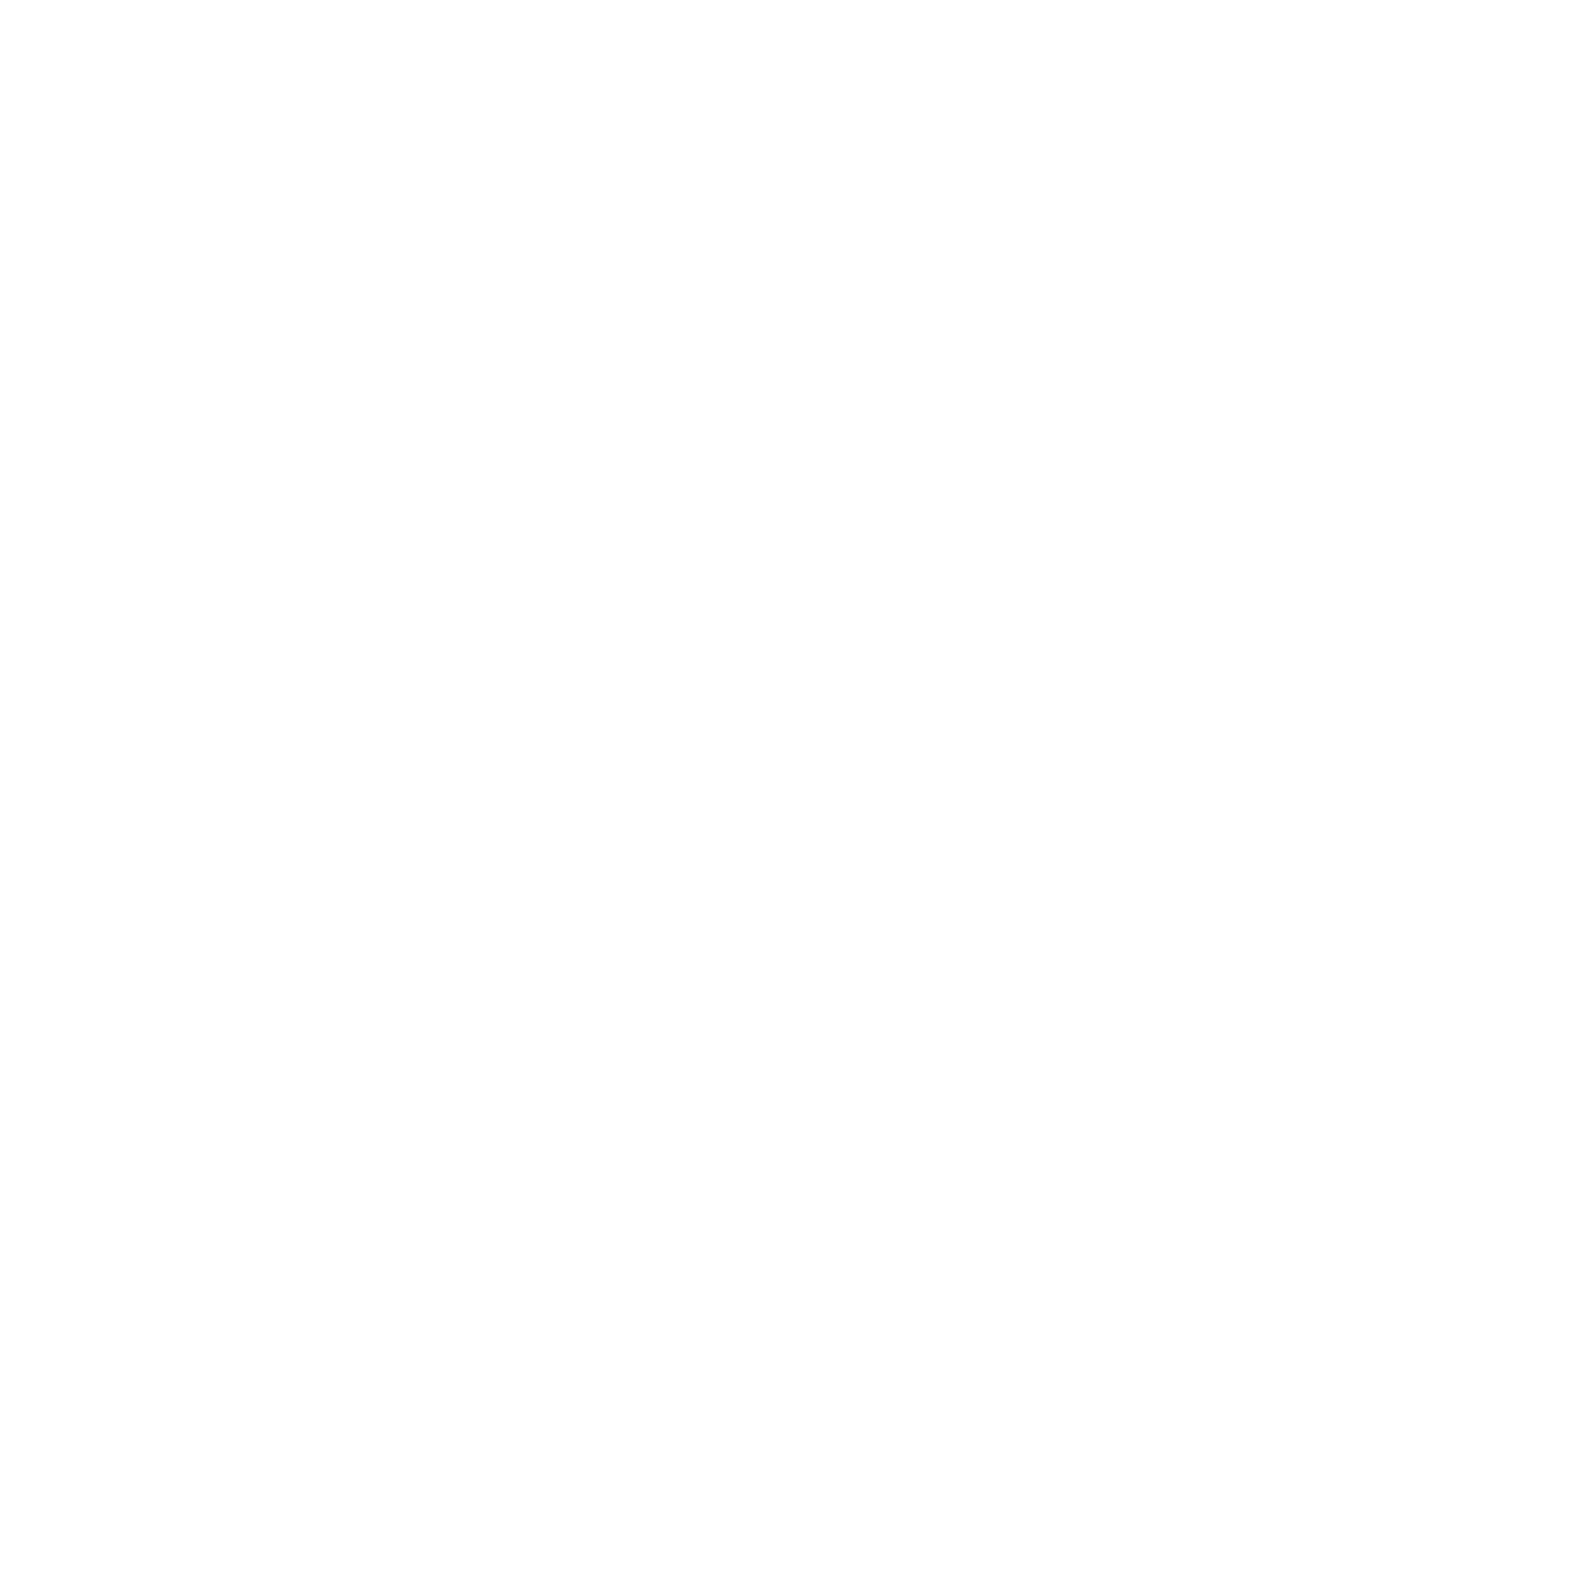 General Electric logo pour fonds sombres (PNG transparent)